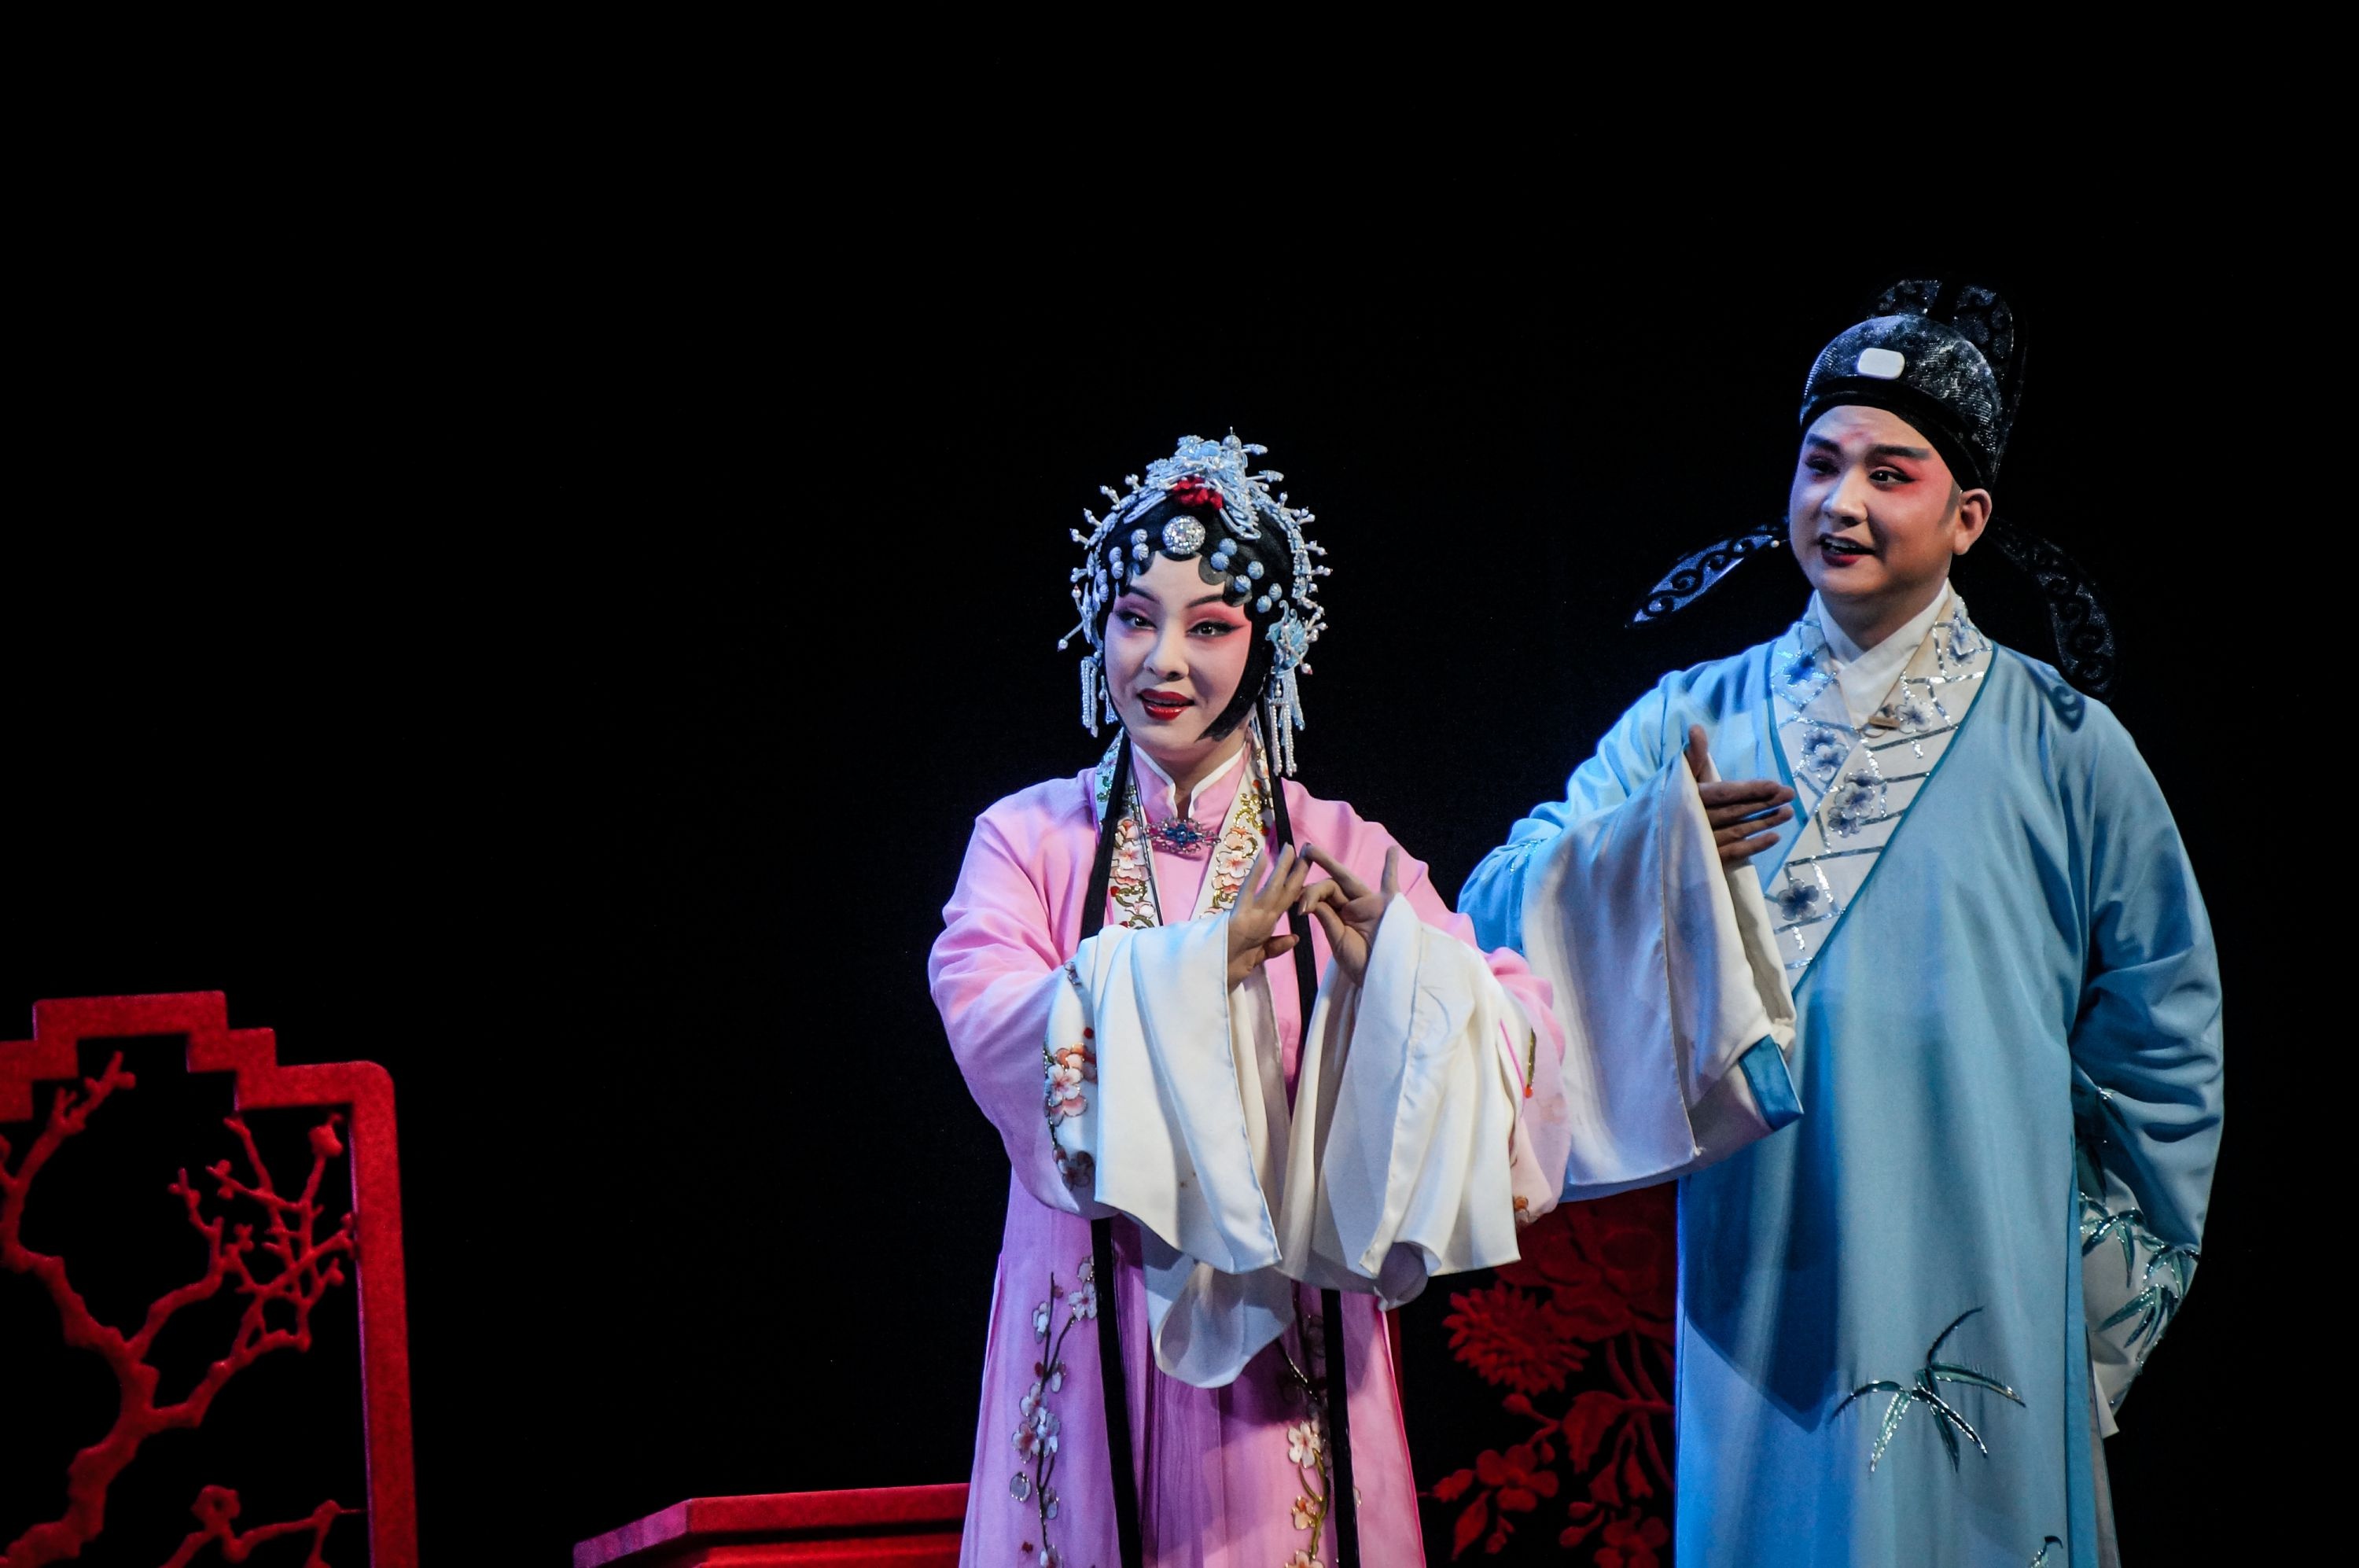 黄梅戏《罗帕记》赢得满堂彩,又一国家级戏曲盛会在汉开幕